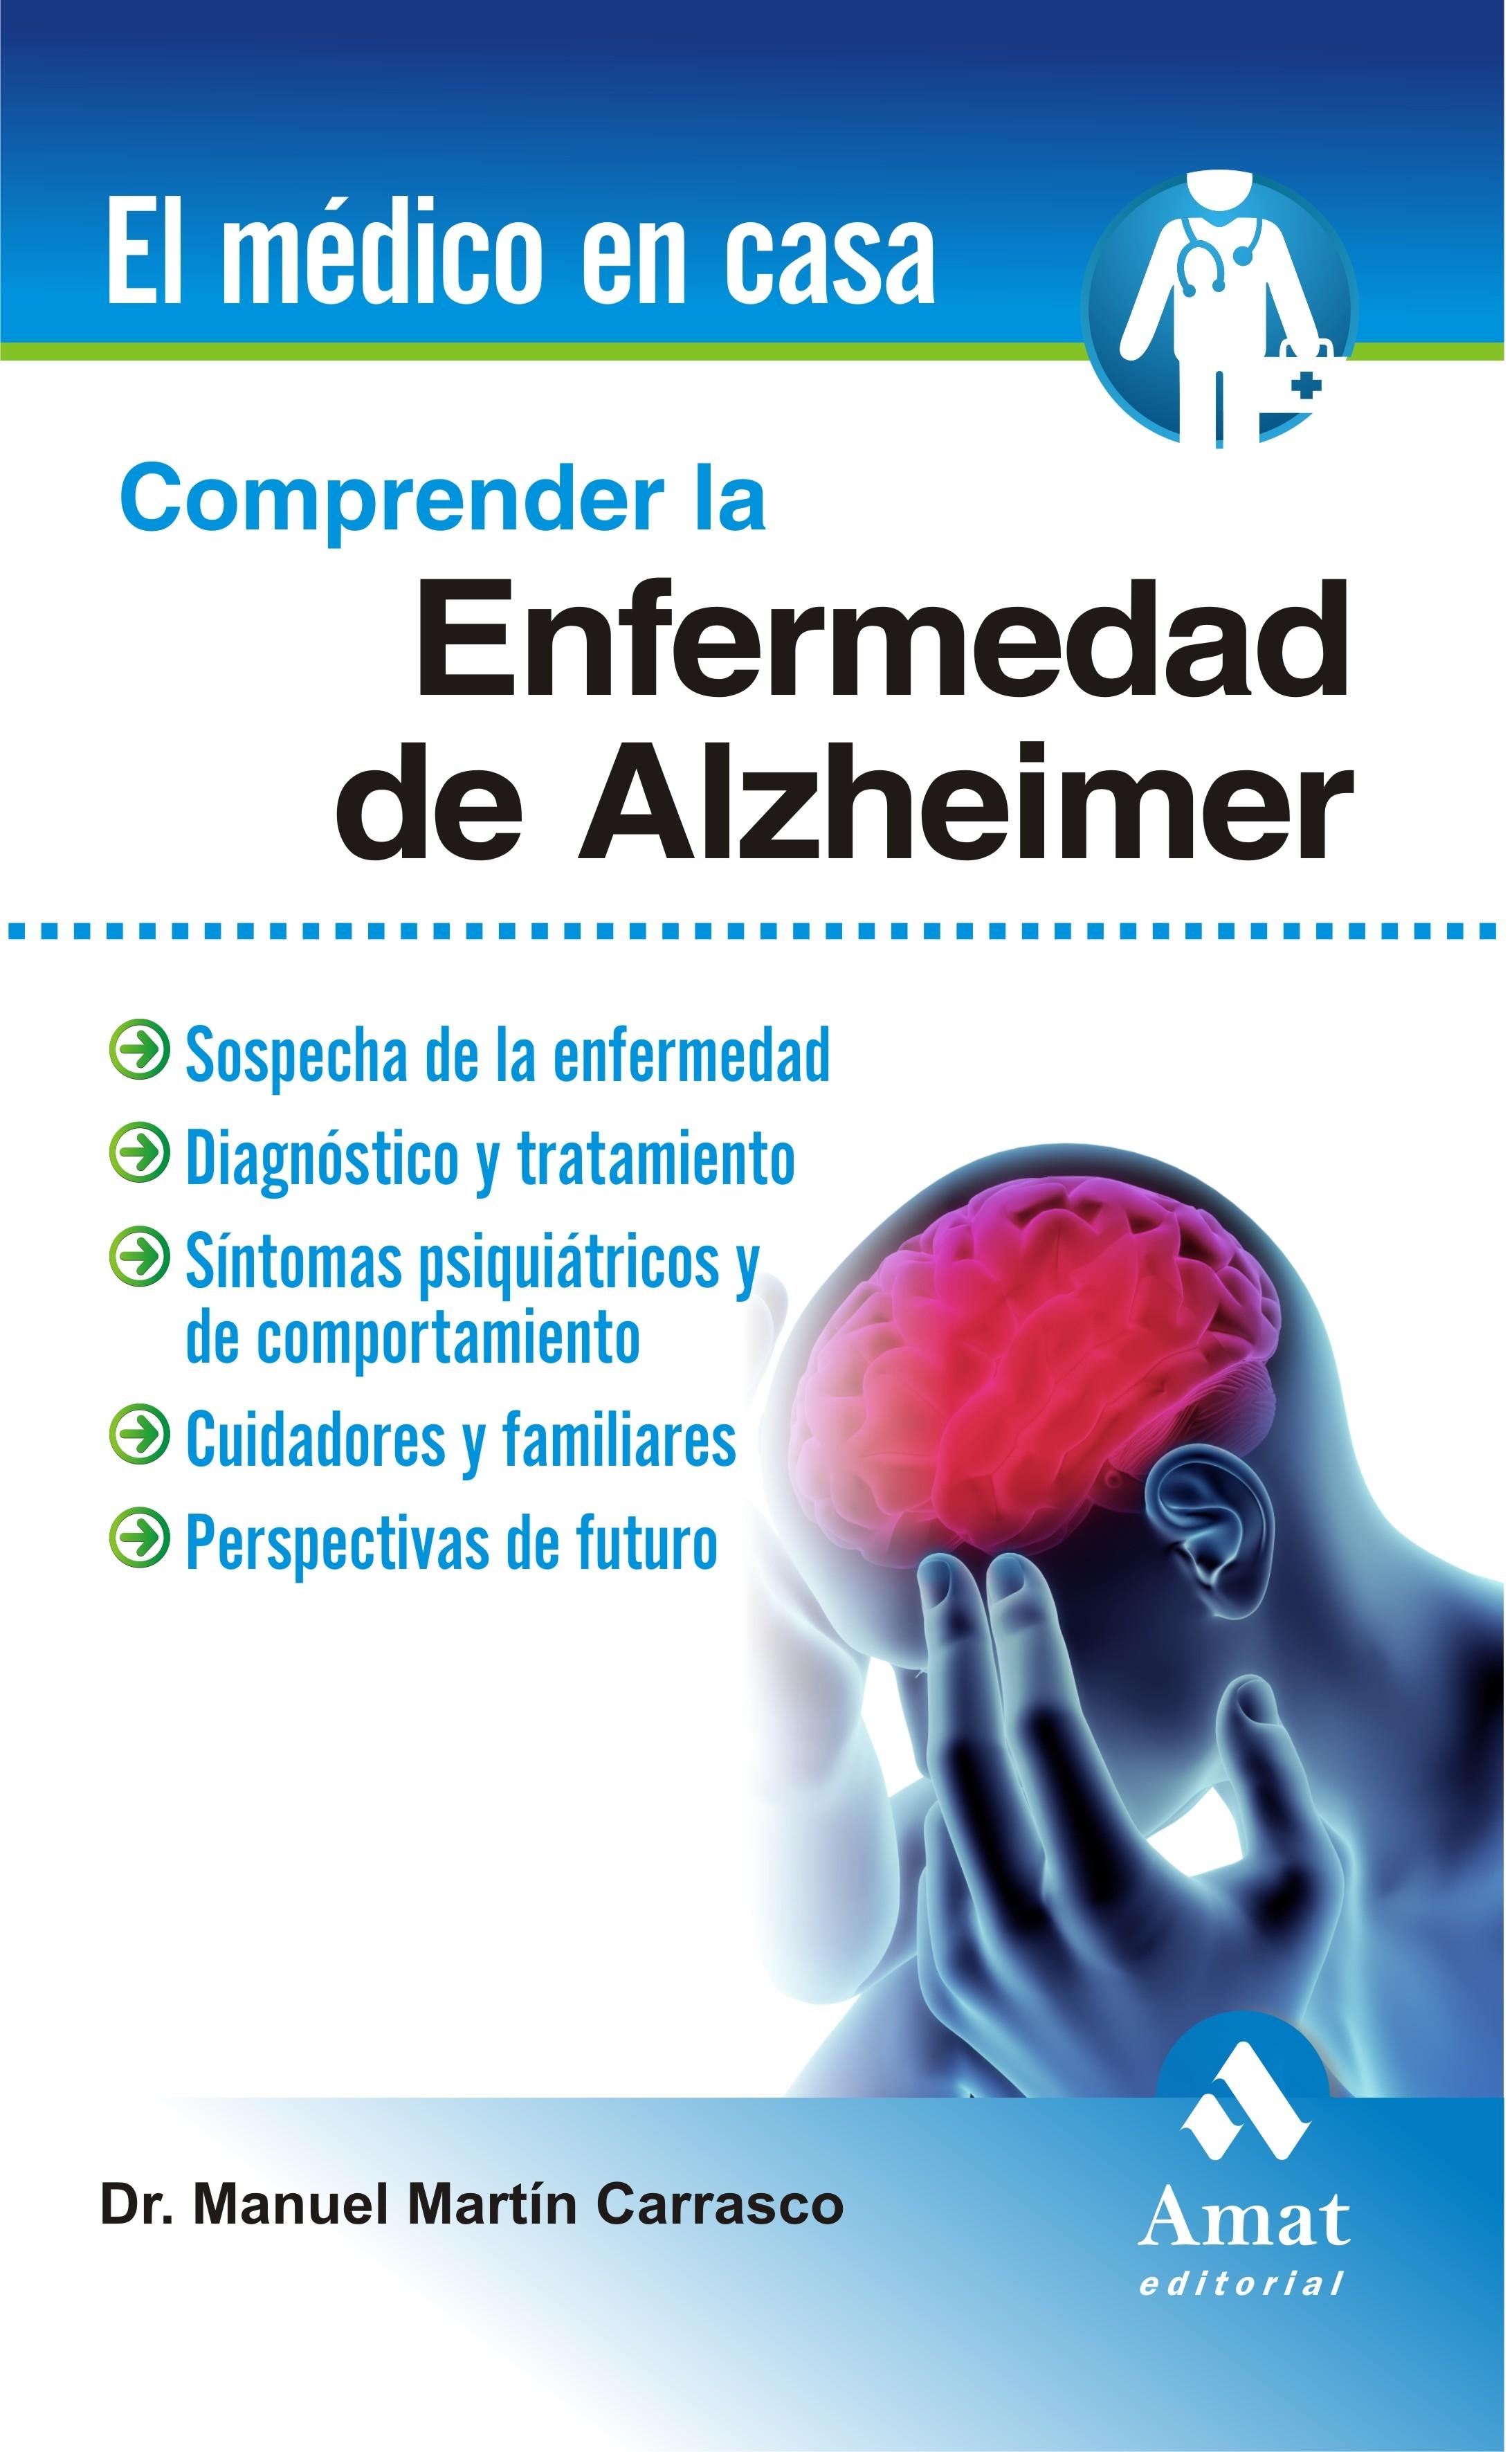 Comprender la Enfermedad del Alzheimer "Sospecha de la Enfermedad, Diagnóstica y Tratamiento". 